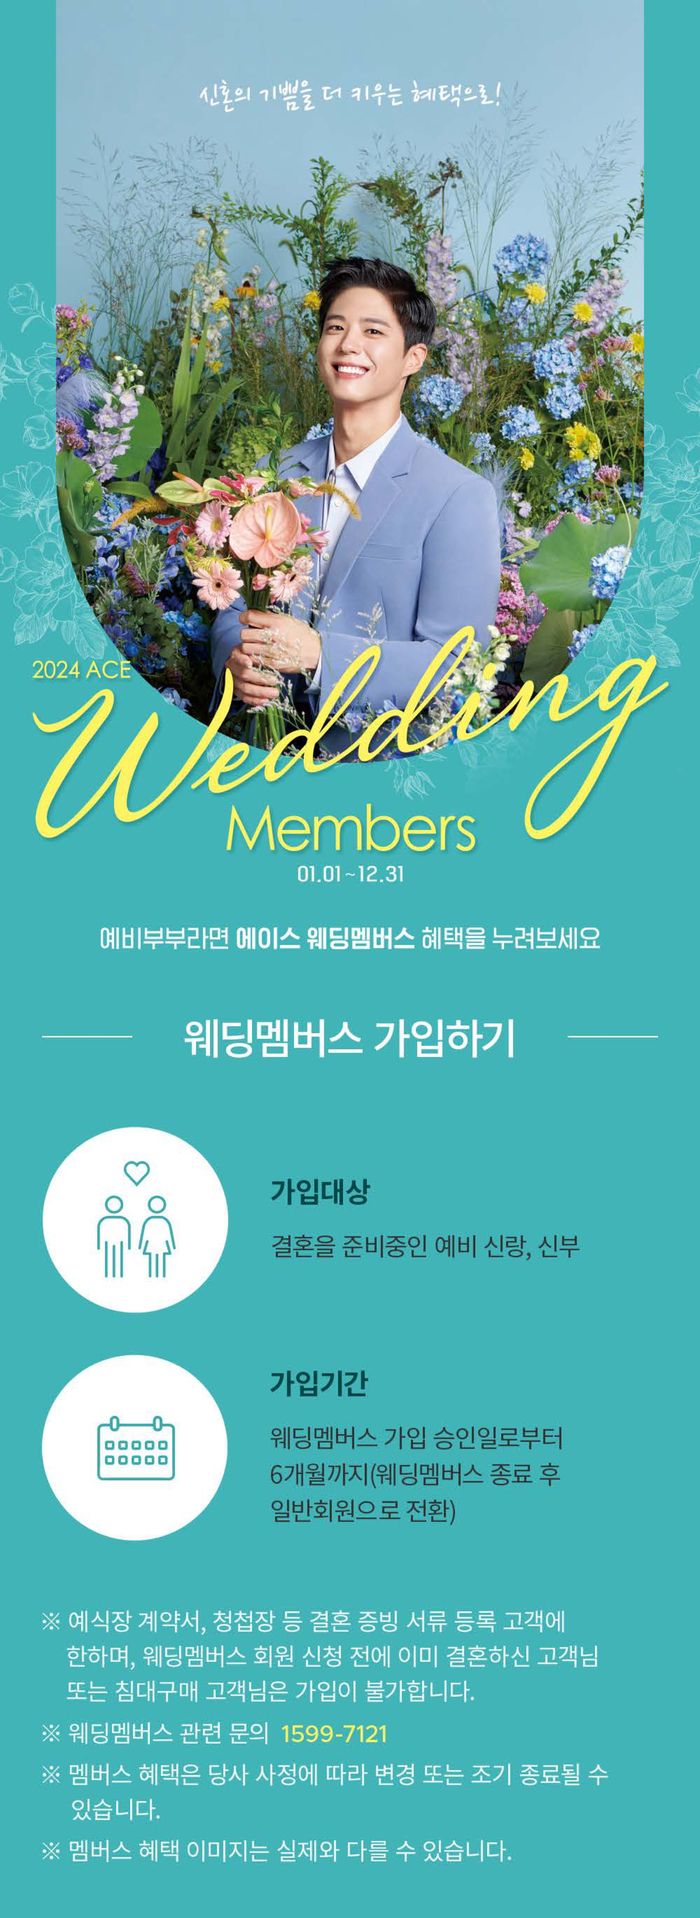 대전광역시의 에이스침대 카탈로그 | Weeding Members | 2024. 1. 26. - 2024. 12. 31.